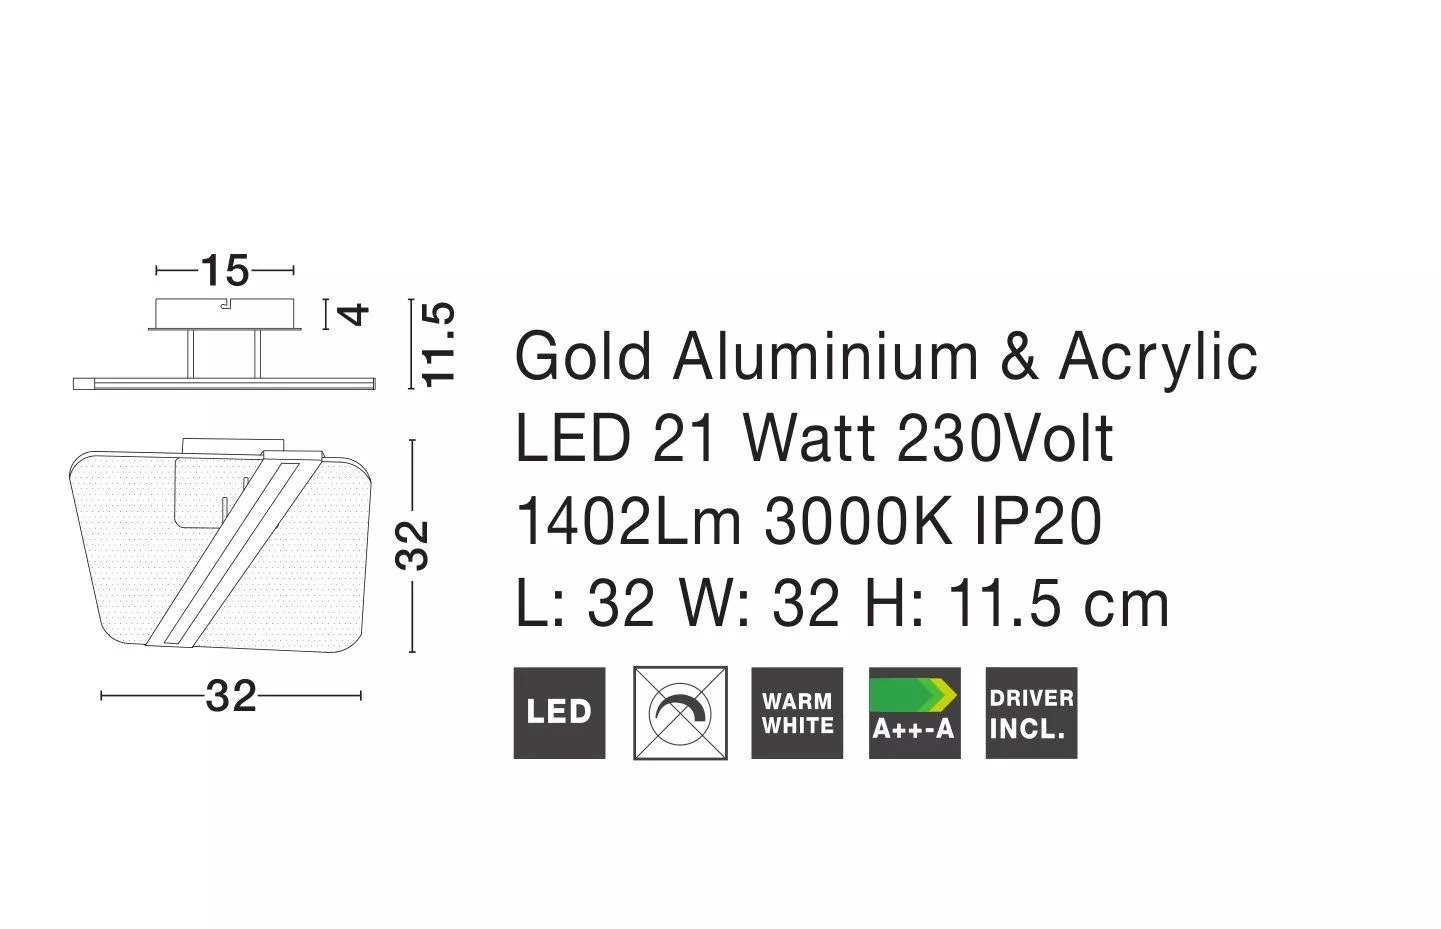 Plafoniera LED Quadrata per interno ed esterno - Colore Bianco - 30W -  Bianco Caldo